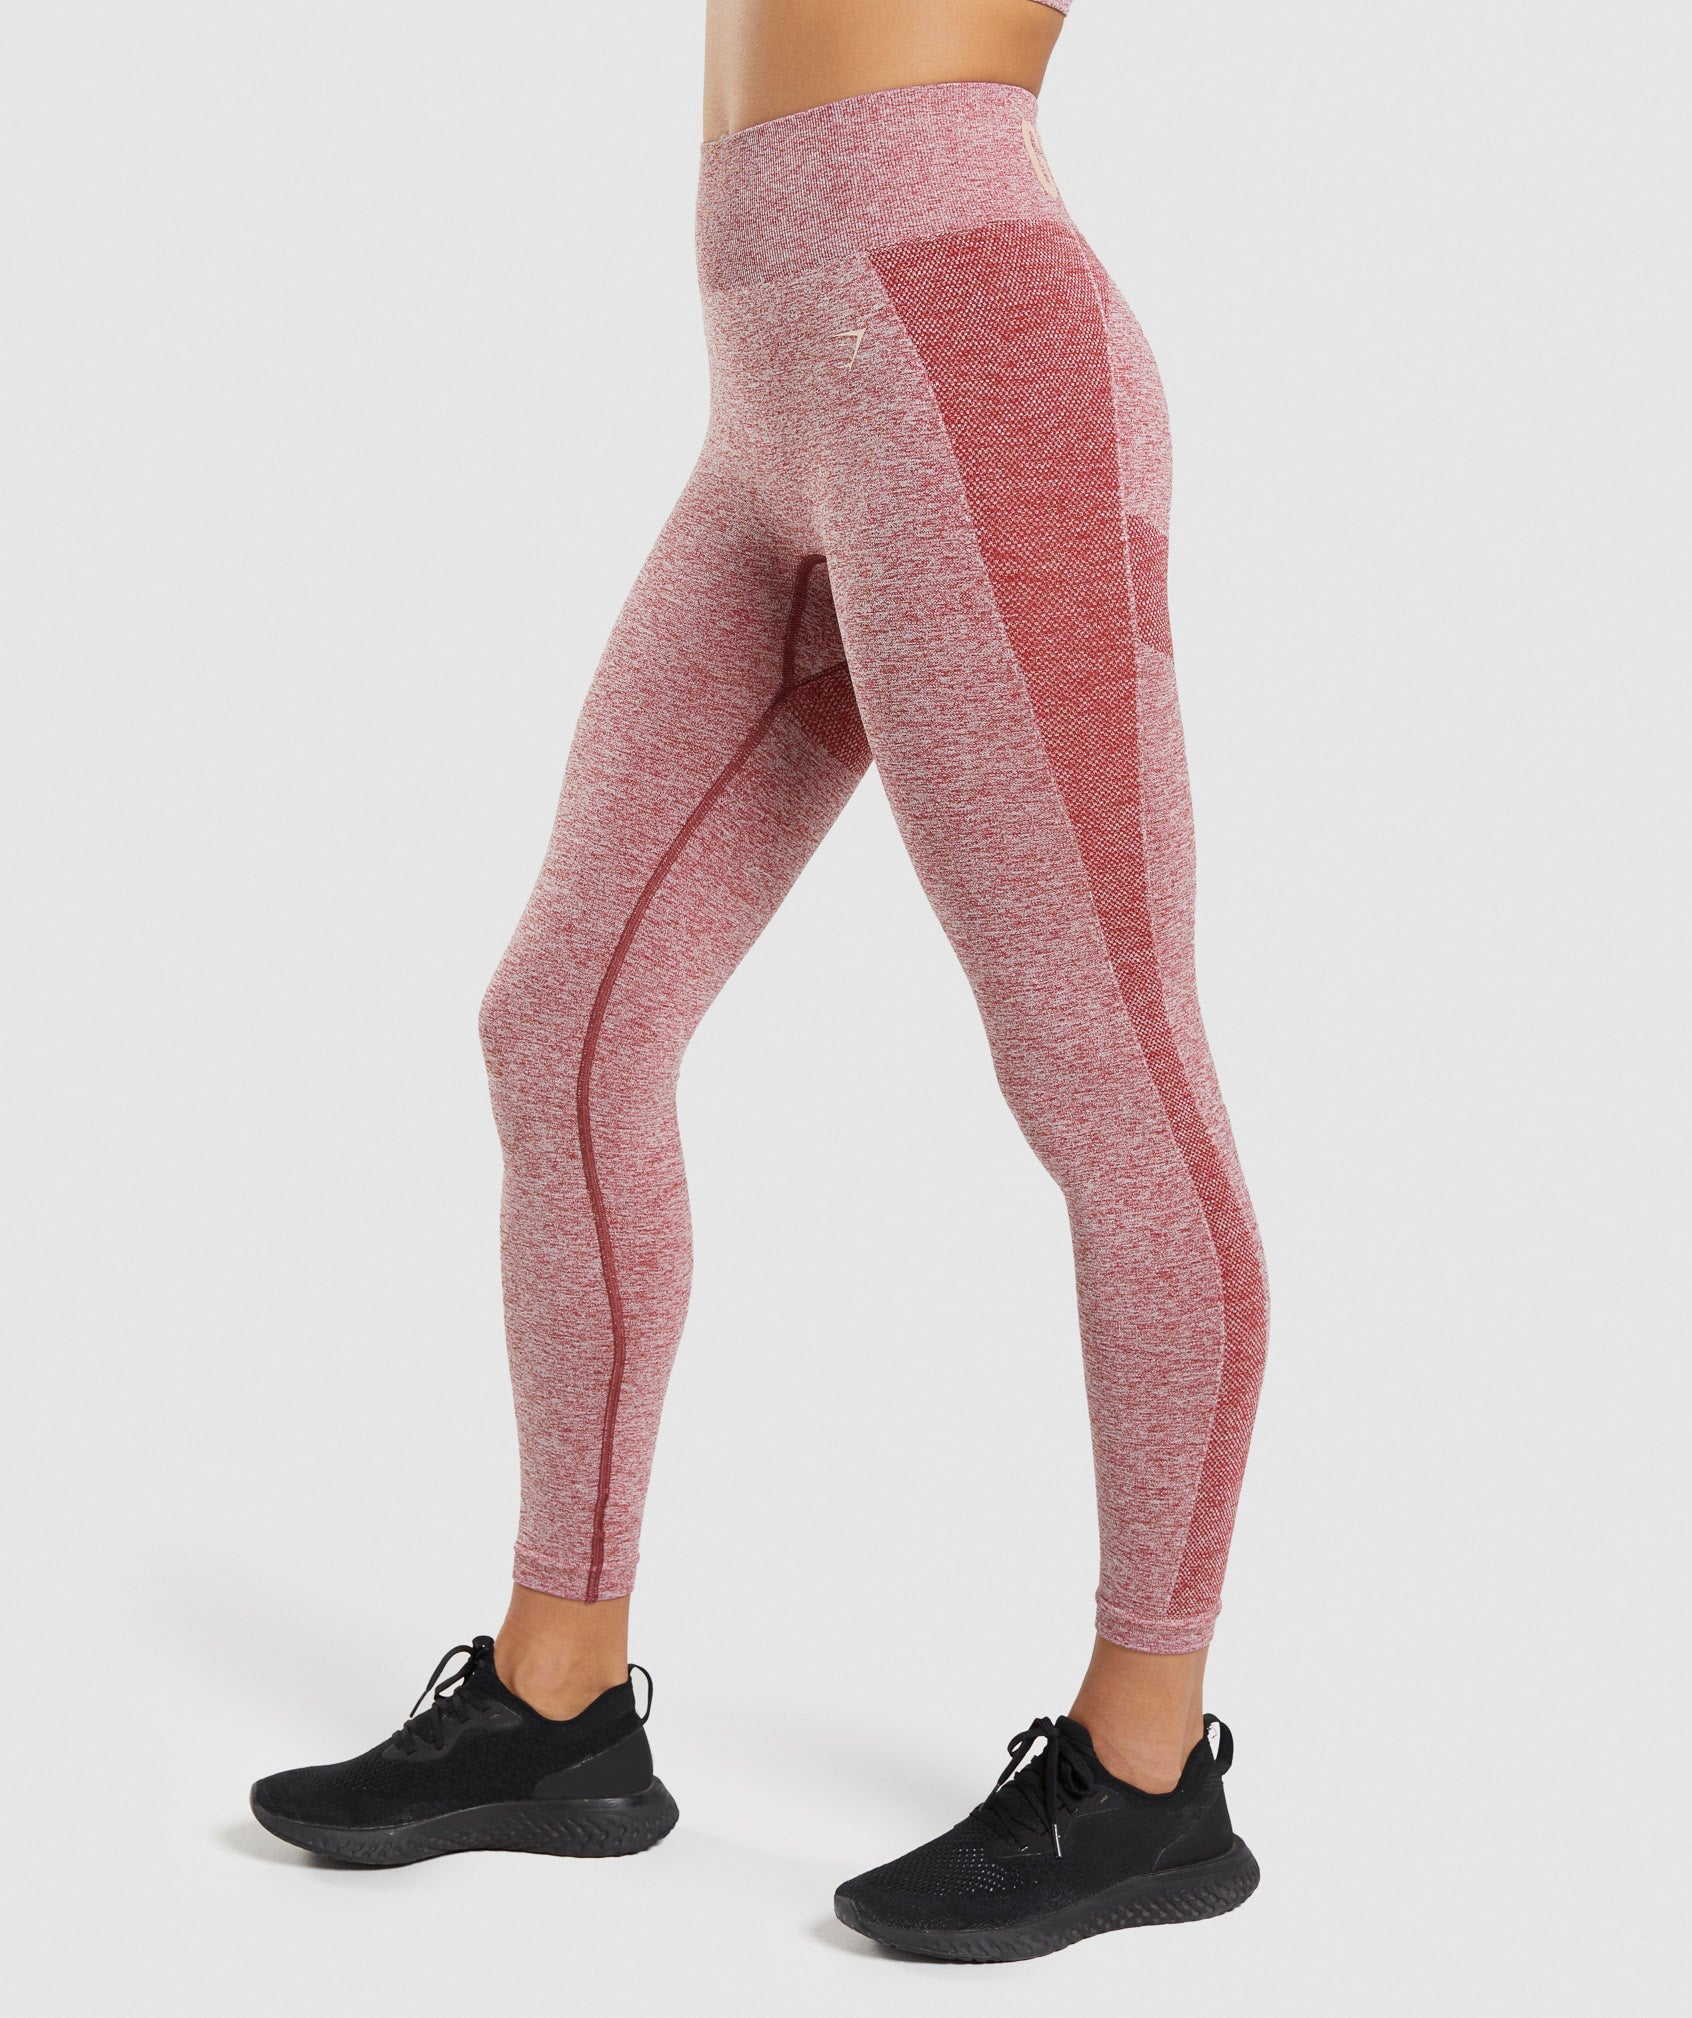 Maroon Legging Yoga Pants Leggings Cotton Blend Slex Full Length  Stretchable Her